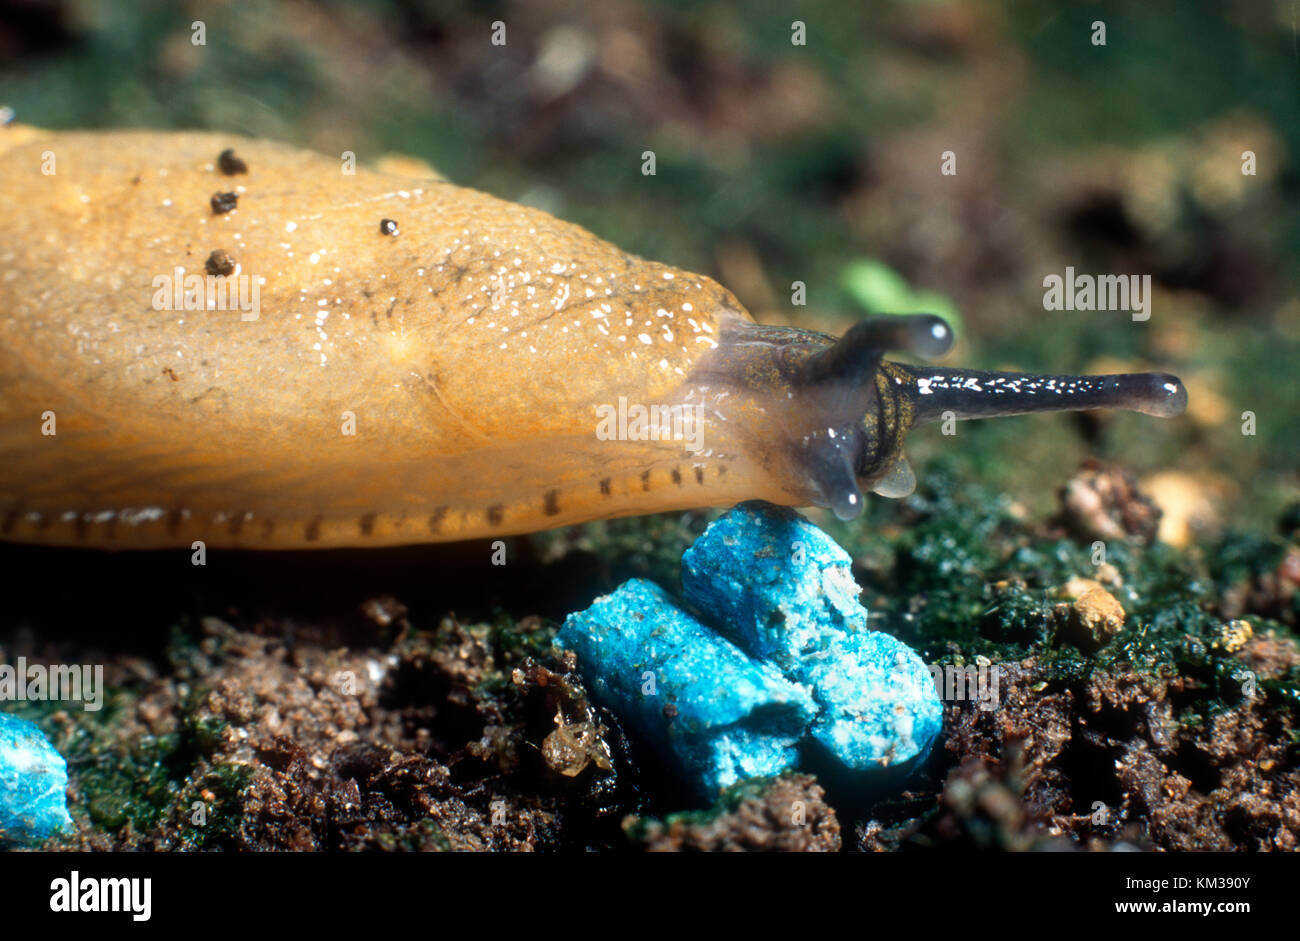 Limace à propos de manger granulés à limaces bleu Photo Stock - Alamy